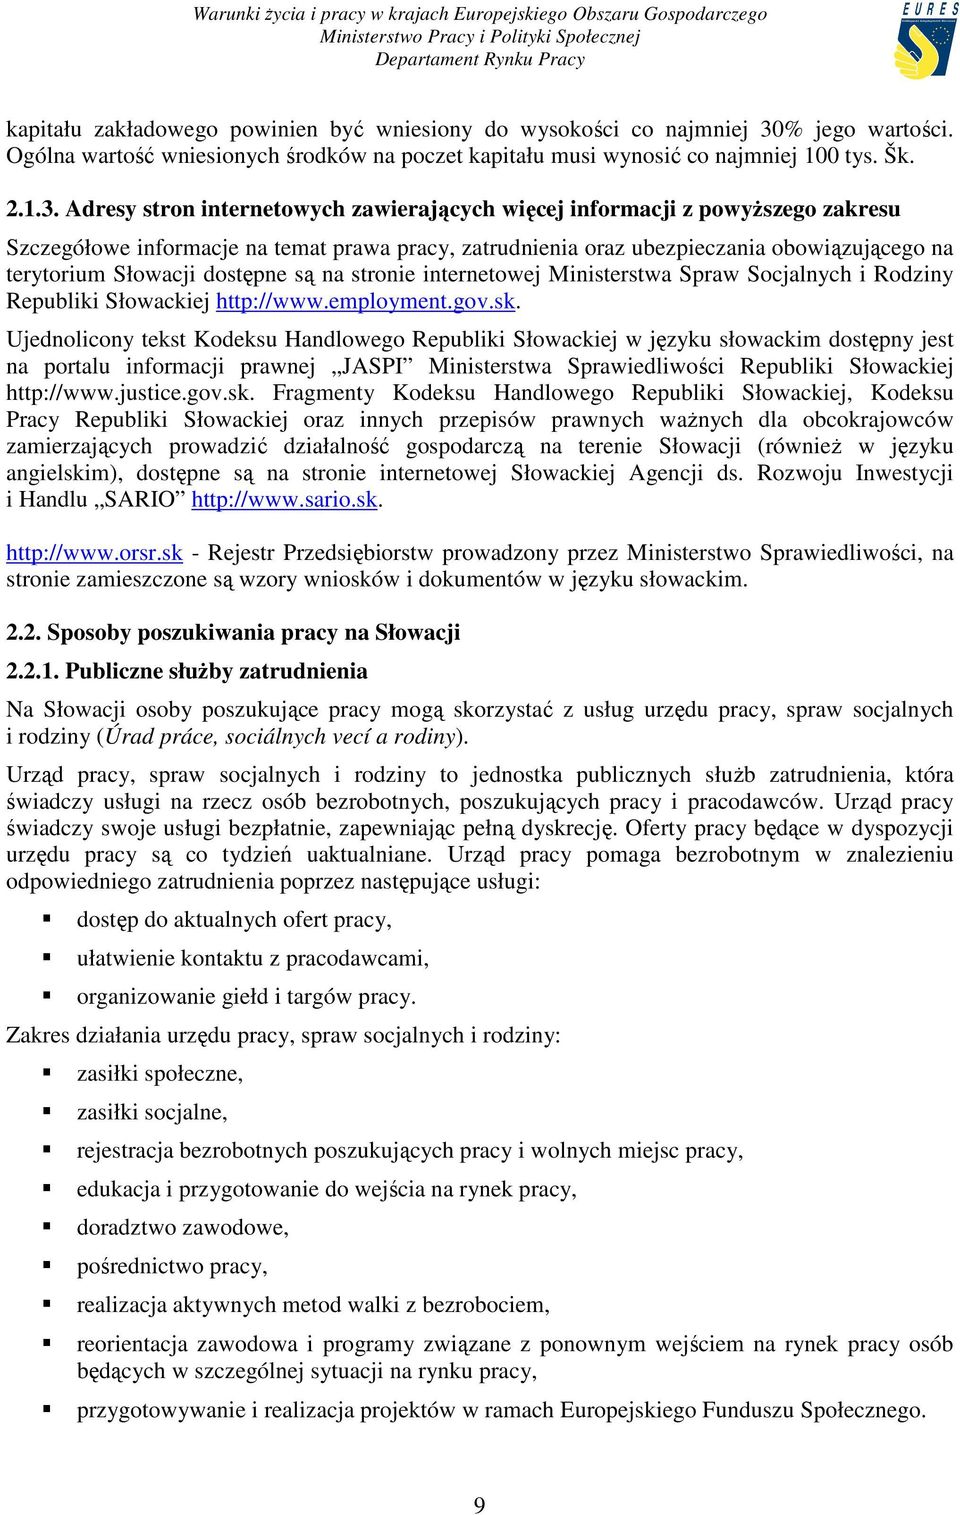 Adresy stron internetowych zawierających więcej informacji z powyŝszego zakresu Szczegółowe informacje na temat prawa pracy, zatrudnienia oraz ubezpieczania obowiązującego na terytorium Słowacji